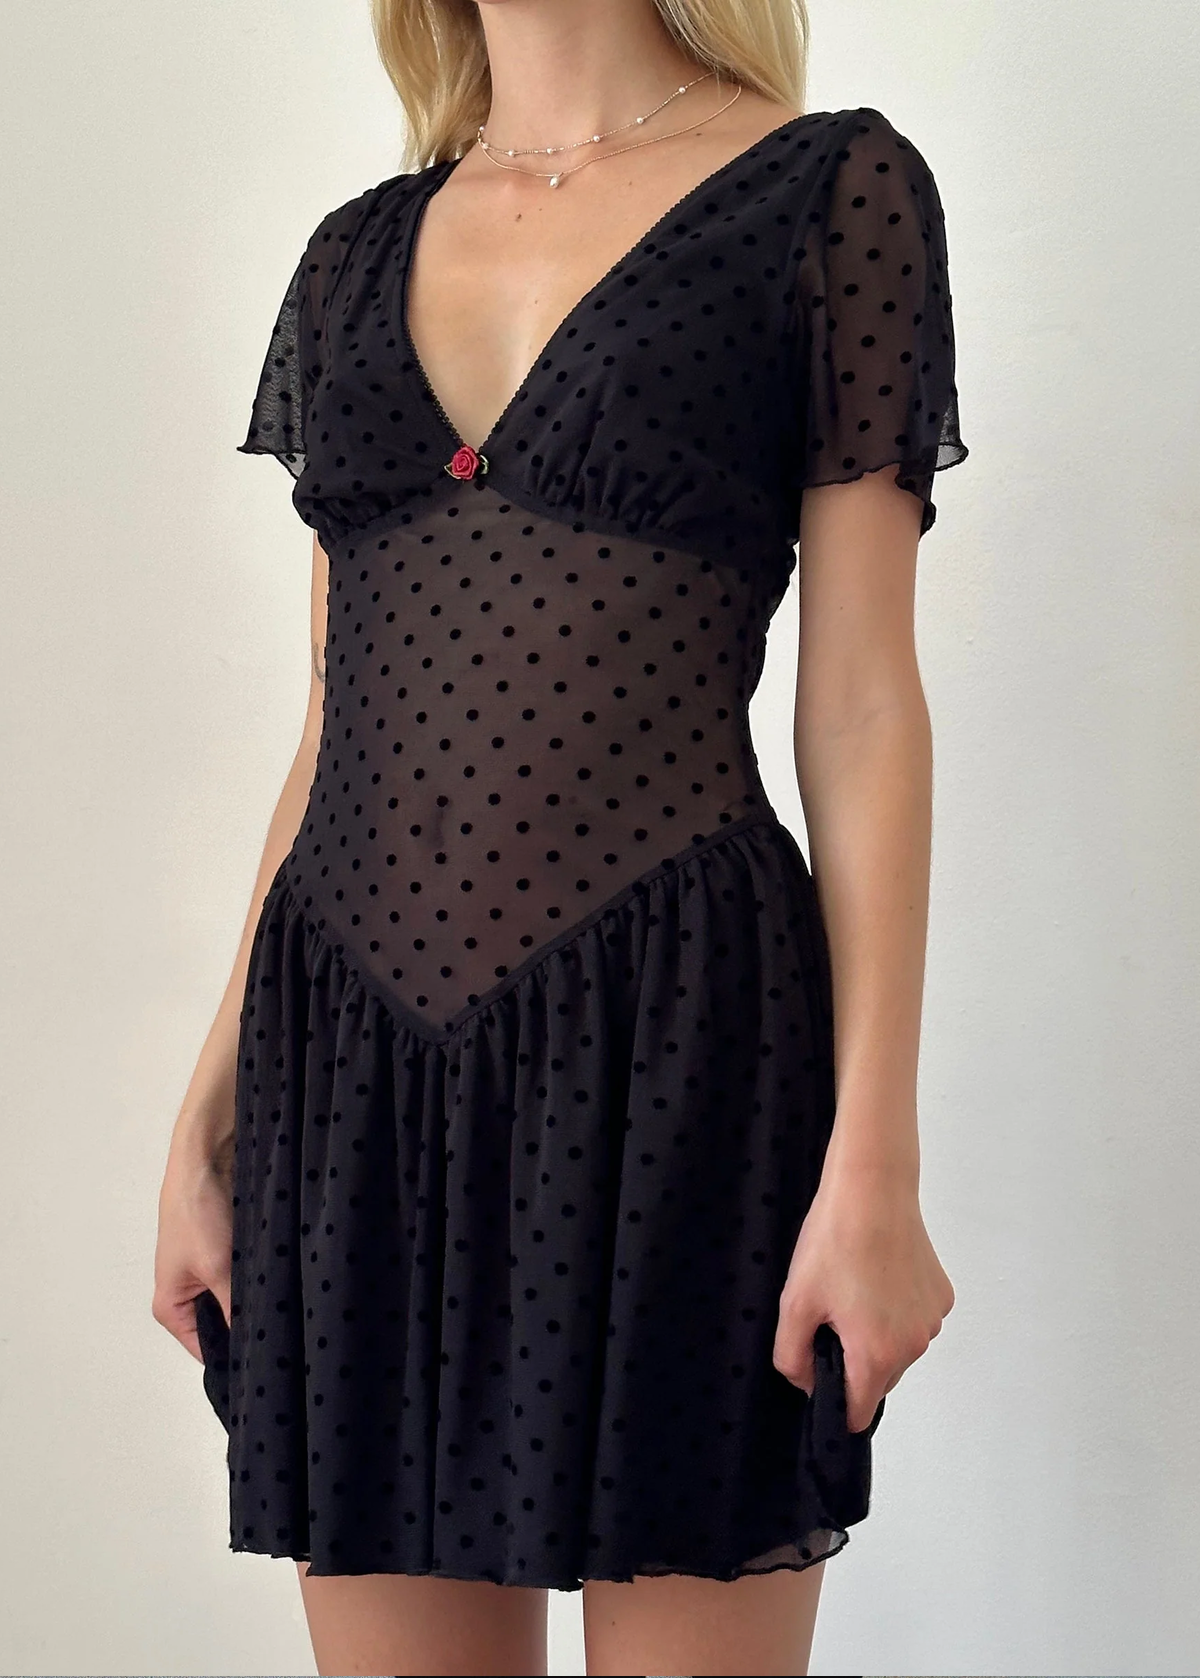 90s inspired black mesh mini dress with black velvet flocked dots allover. Features flutter short sleeves, v-neckline with red satin rosette, sheer waist, and floaty skirt. By Motel Rocks